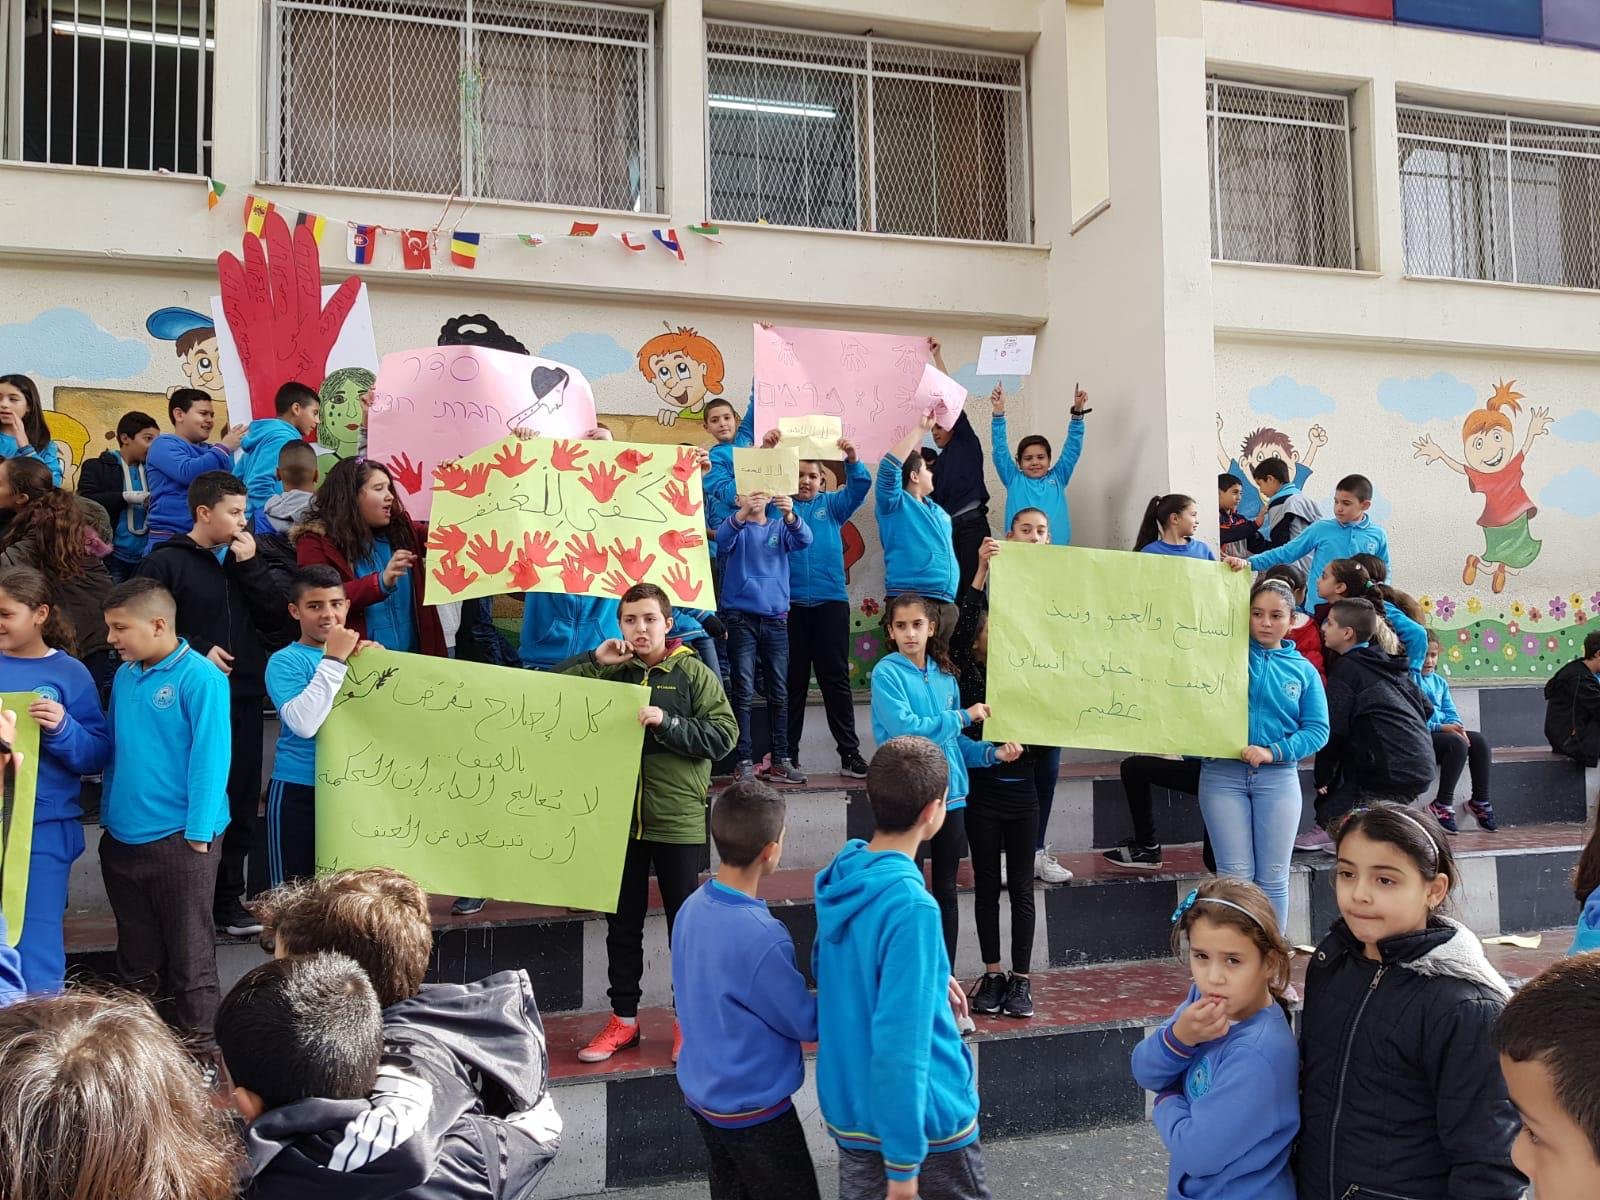 وقفةٌ احتجاجية تضامنًا مع الاضراب ضد العنف في المدرسة الجماهيرية بير الامير الناصرة-12